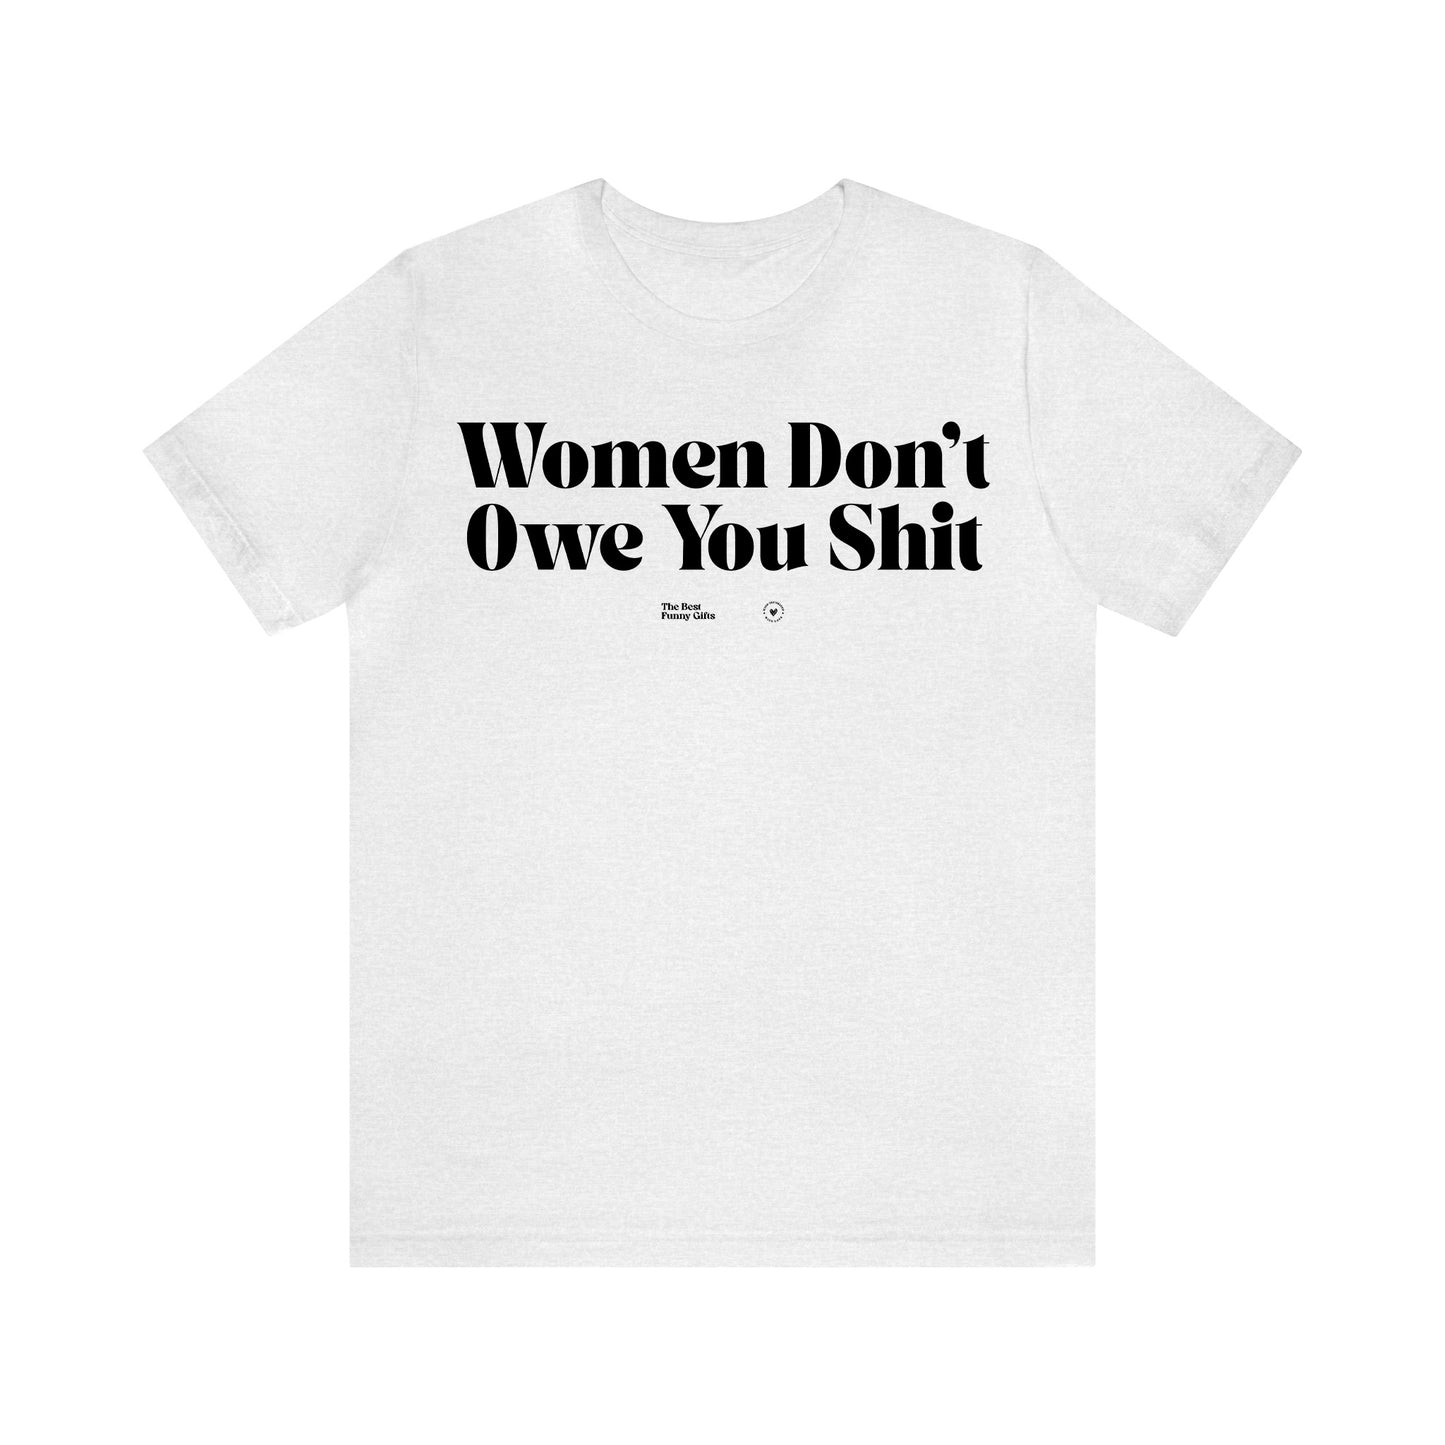 Funny Shirts for Women - Women Don't Owe You Shit - Women’s T Shirts